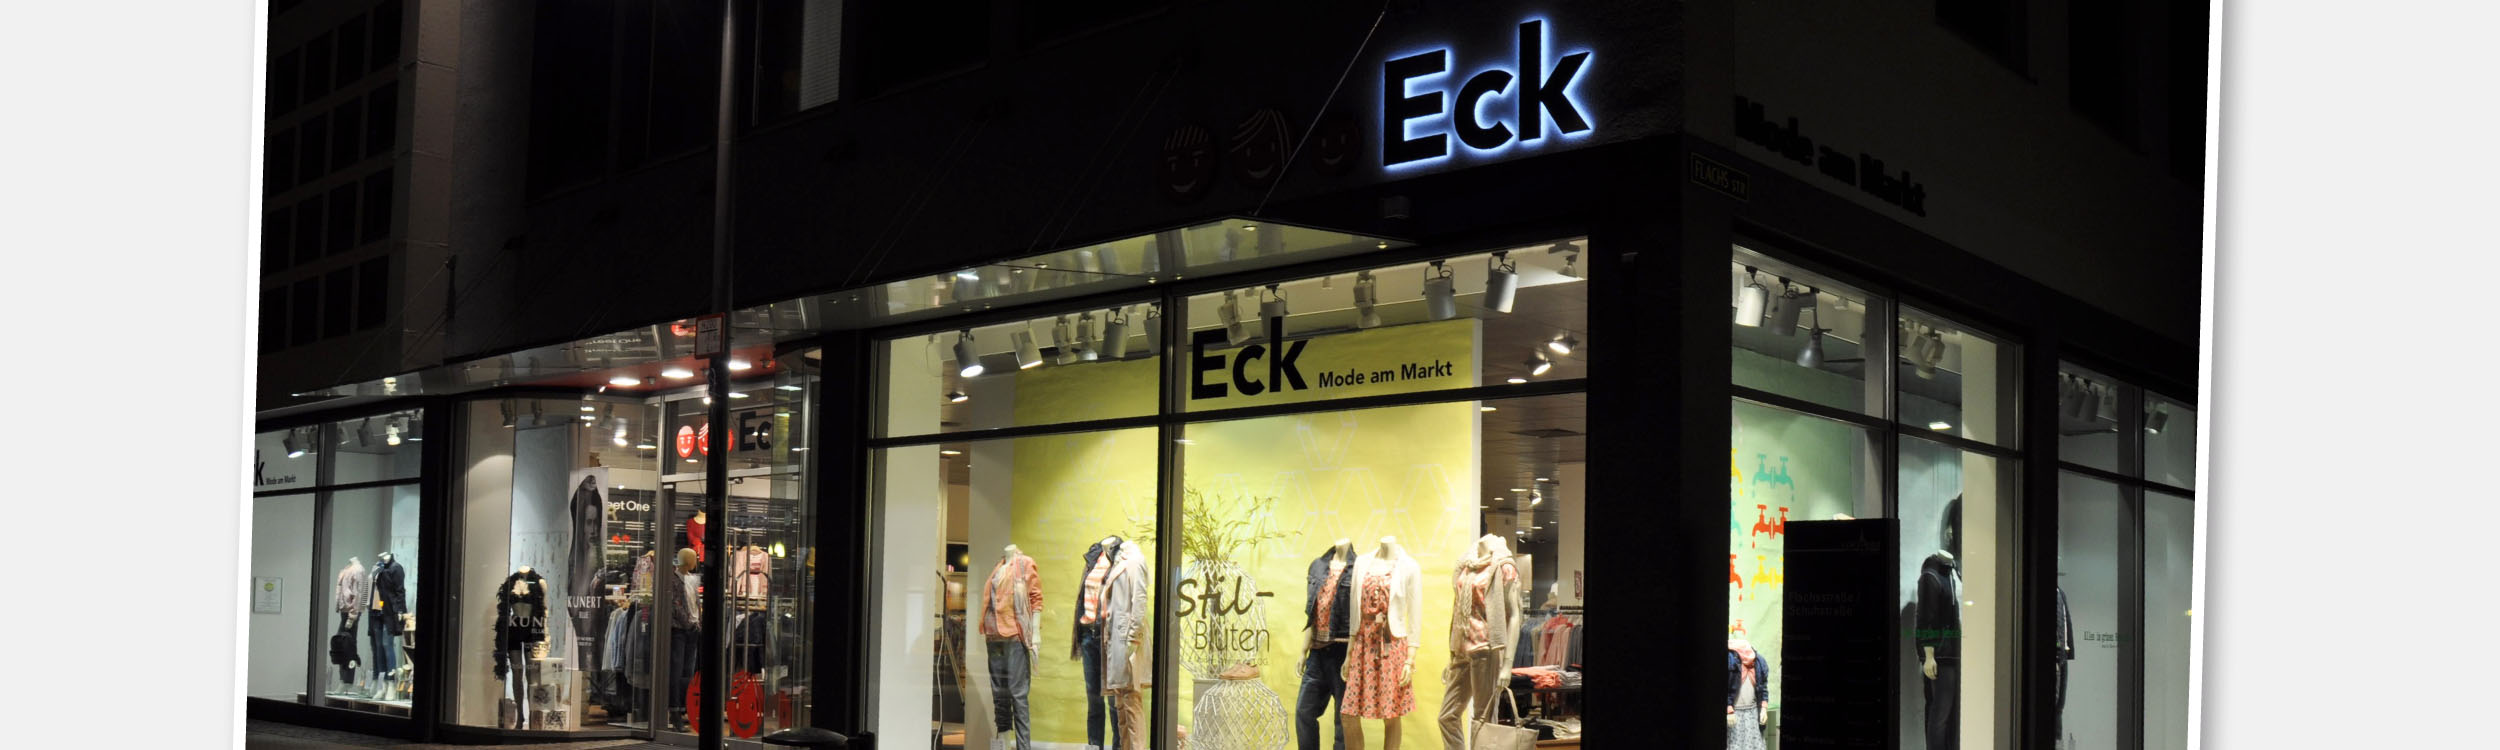 Service Eck Mode am Markt Kirchheim